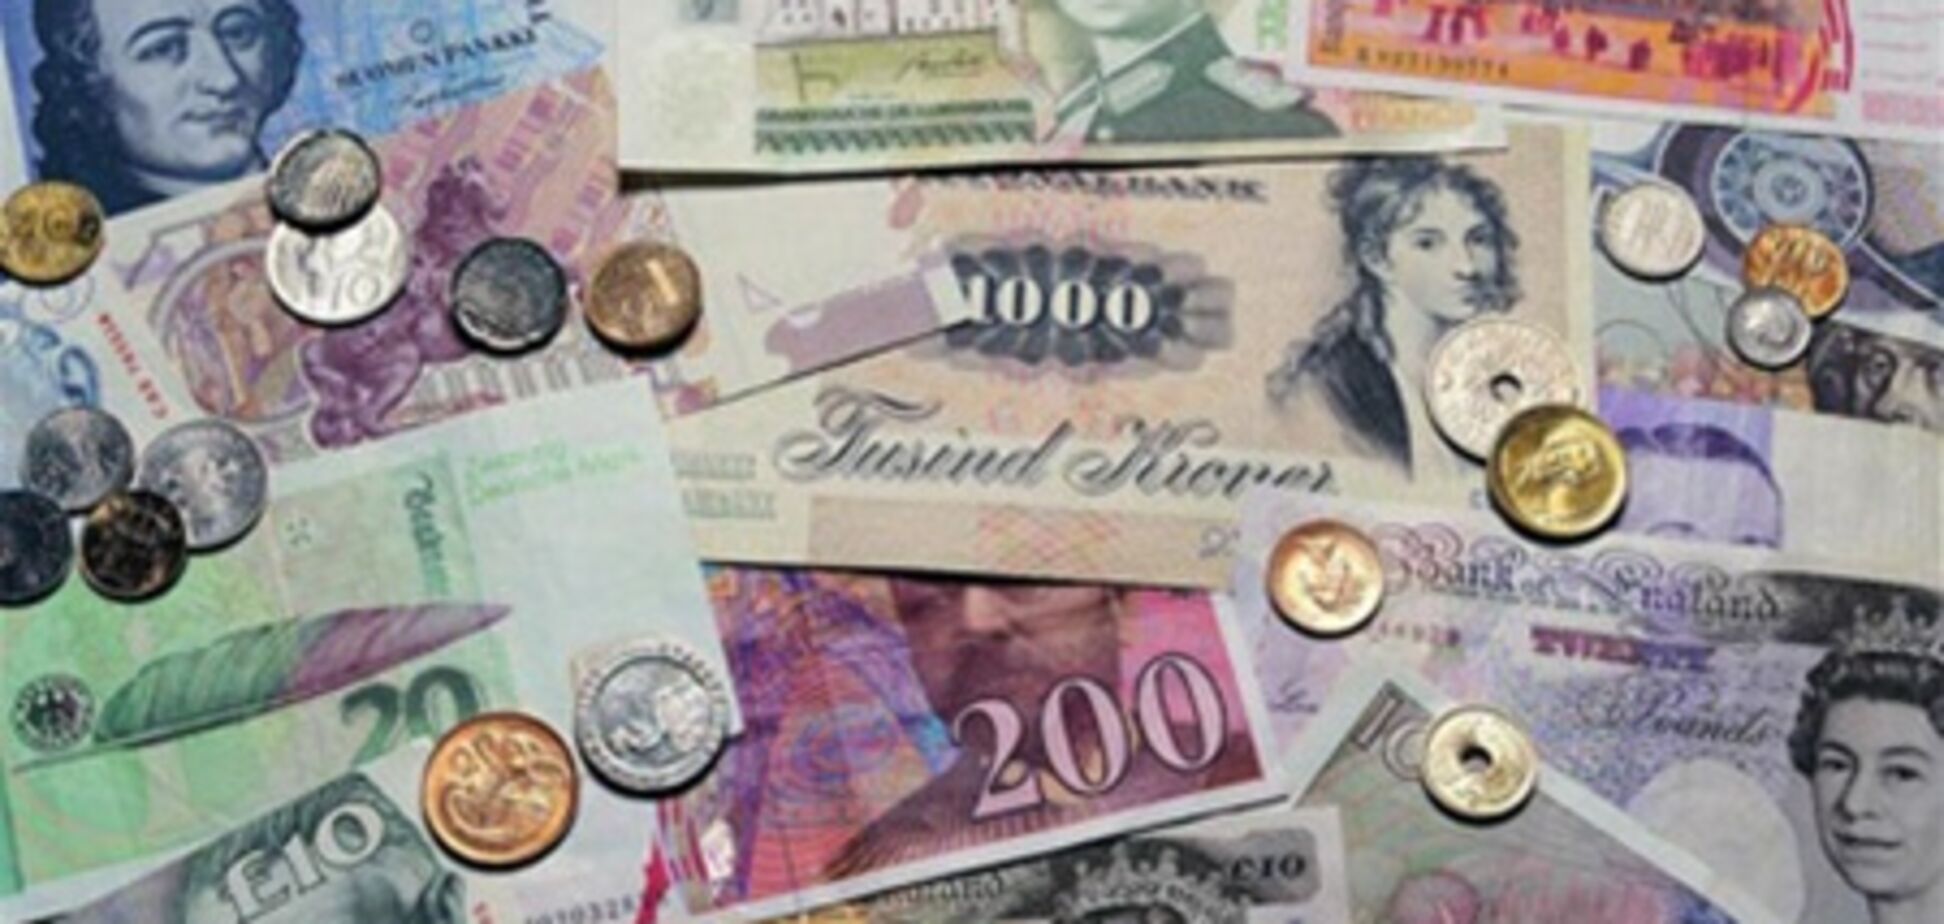 Правительство предлагает выгодную альтернативу валютному депозиту